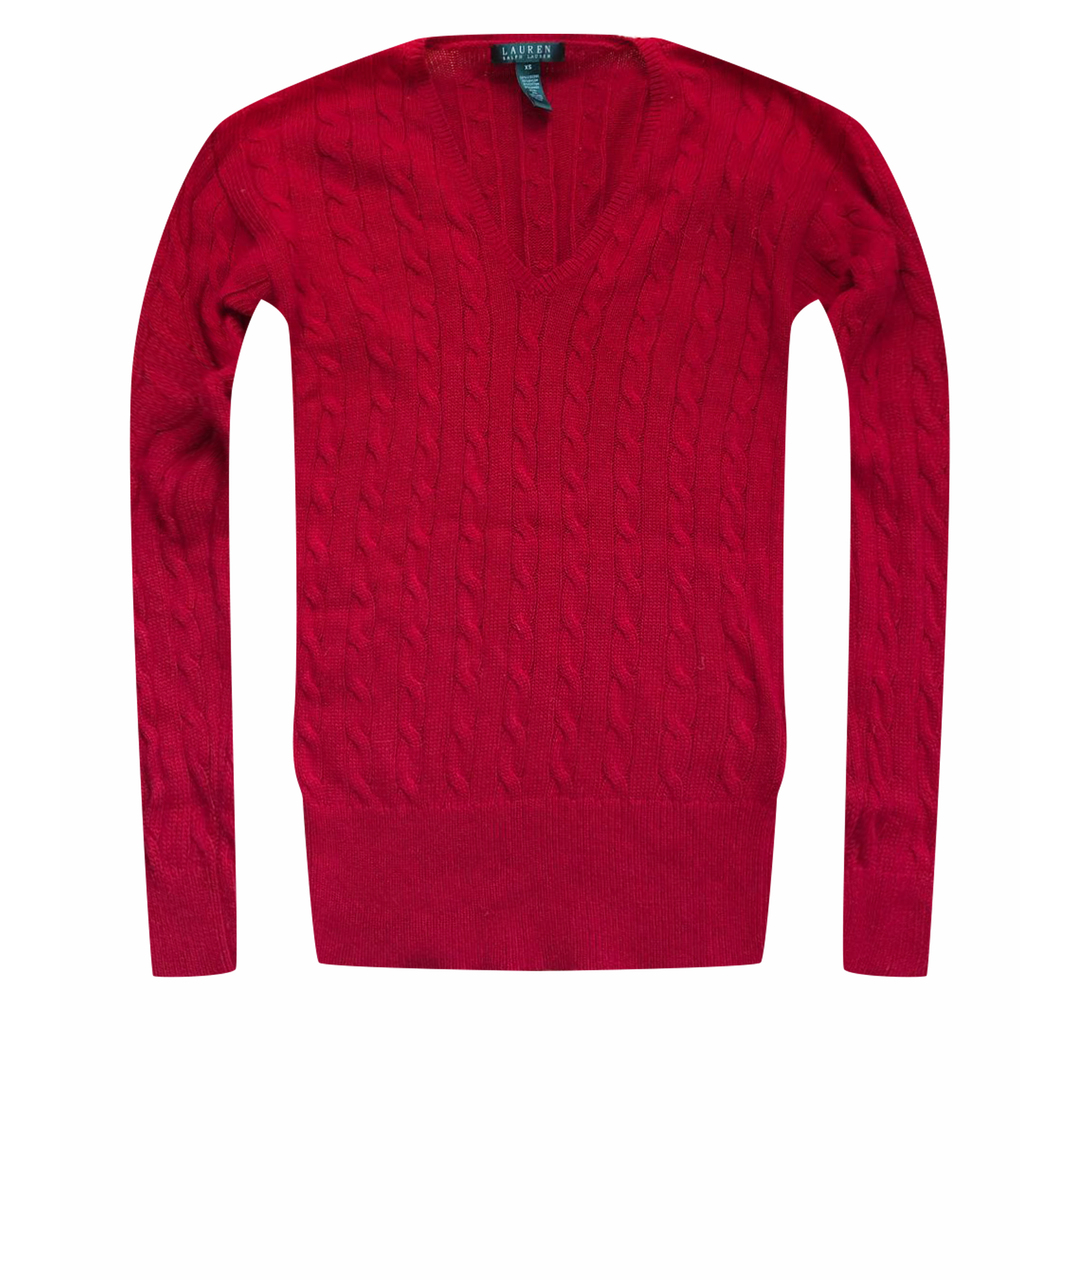 RALPH LAUREN Красный шерстяной джемпер / свитер, фото 1